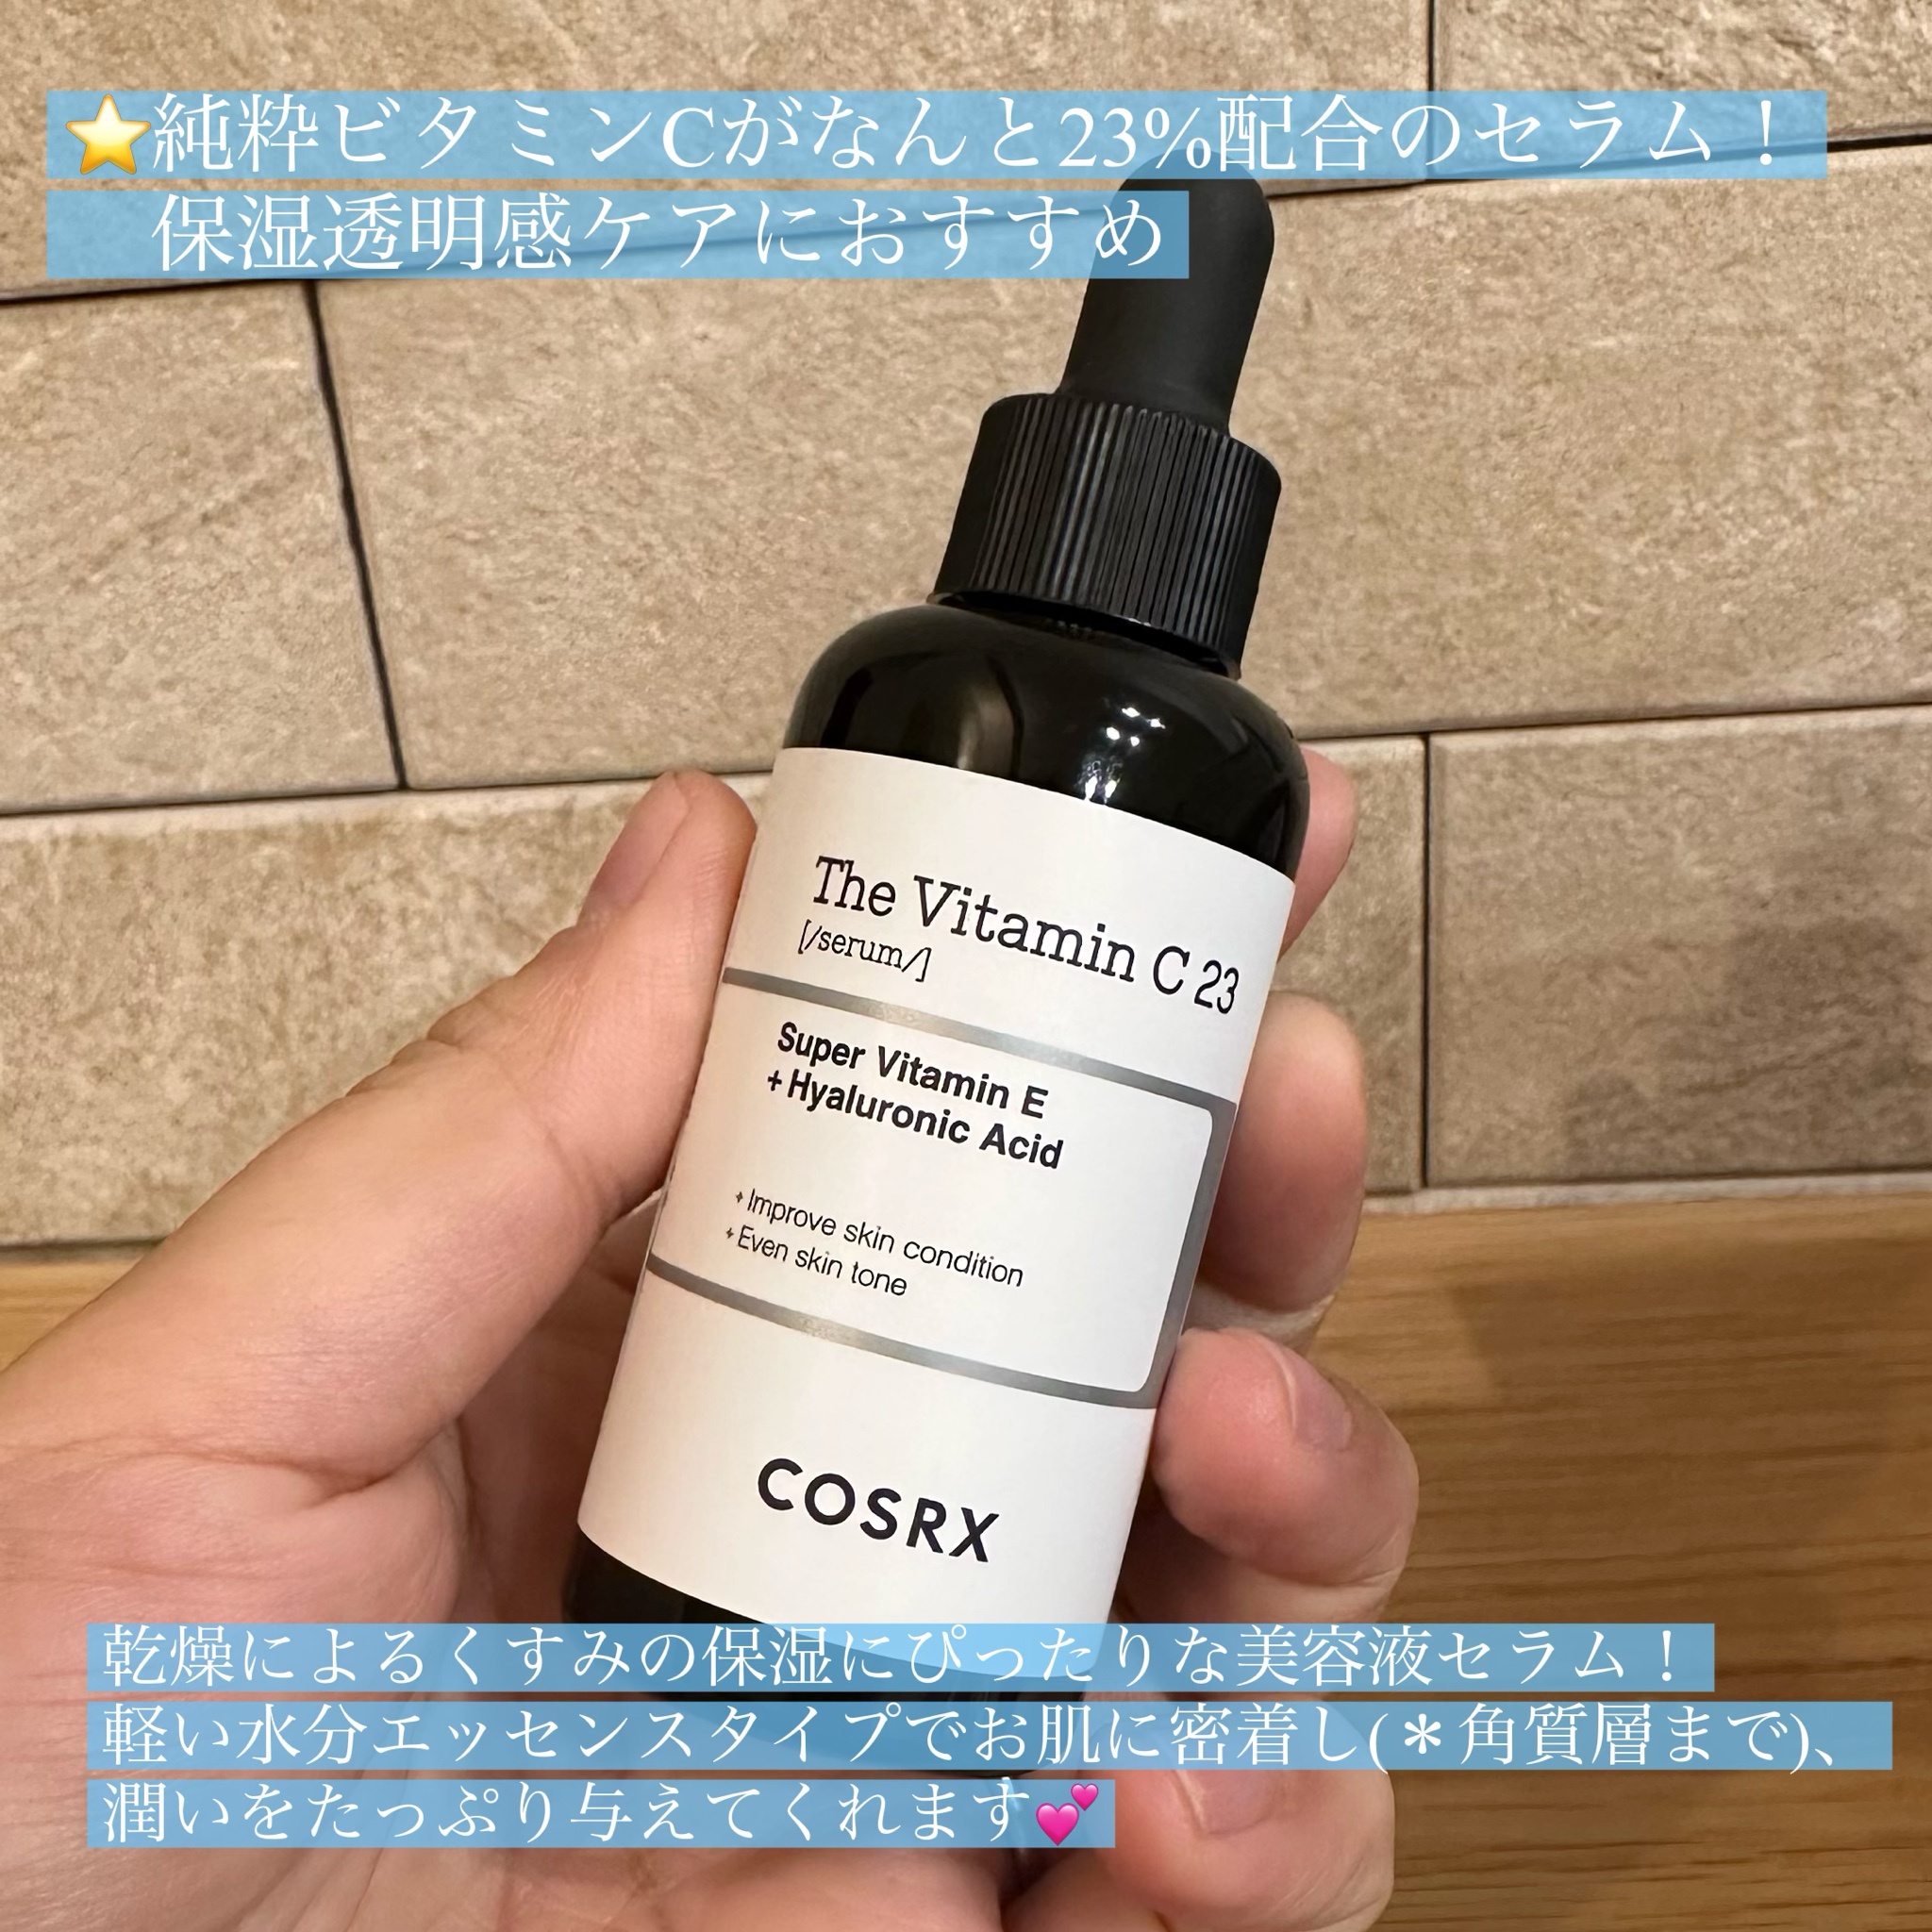 新品未開封 COSRX ザ•ビタミンC23セラム 2個 - 美容液